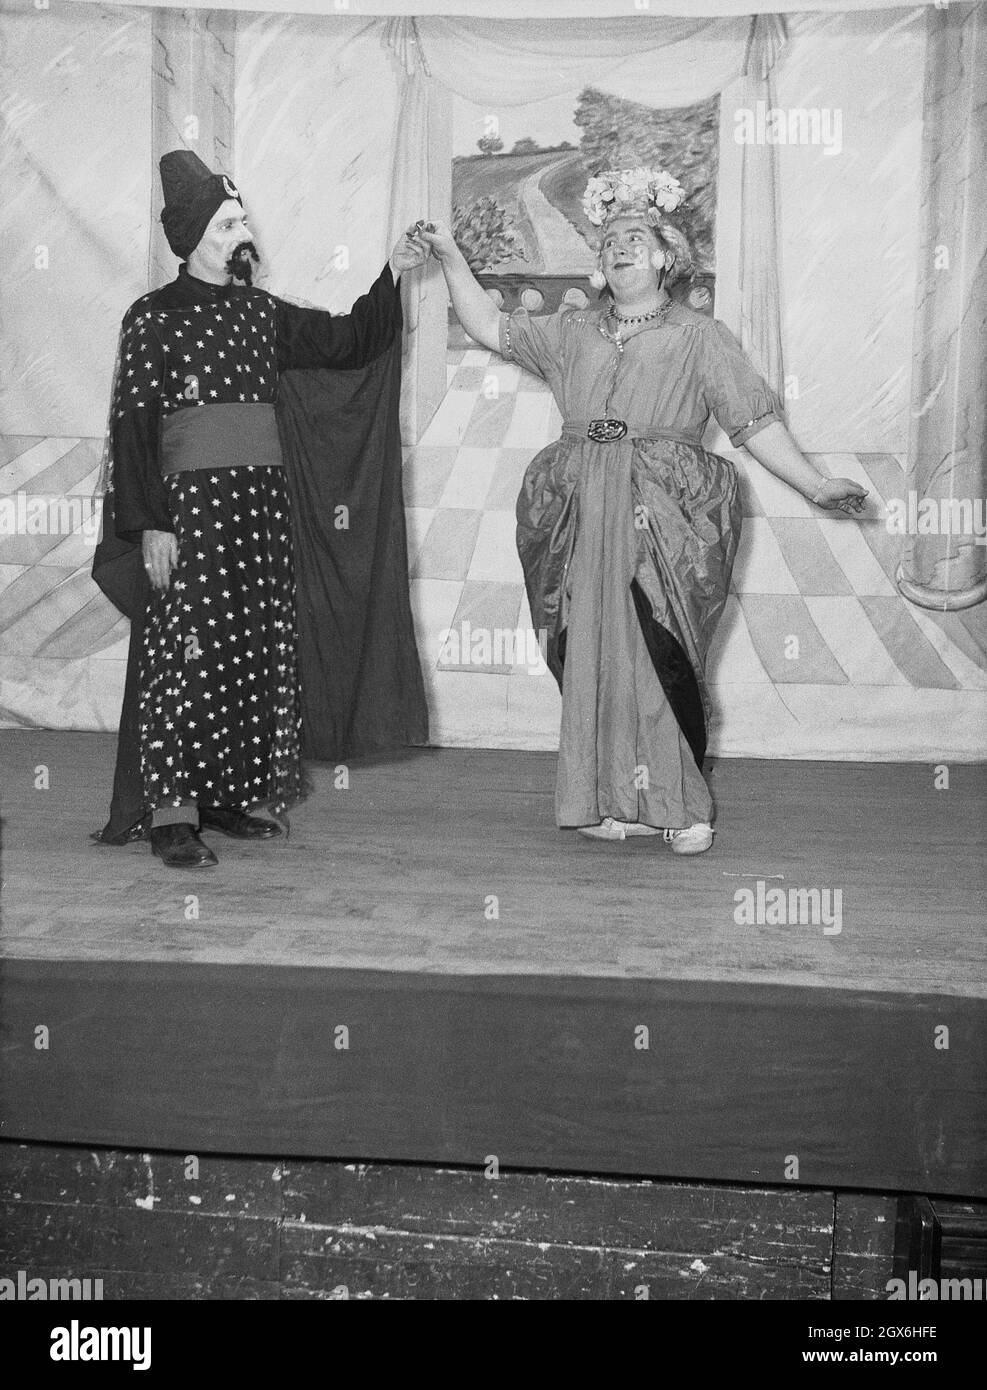 1957, historisch, zwei männliche Schauspieler auf der Bühne im Stück Aladdin, basierend auf einer nahöstlichen Volksgeschichte oder Fabel über den Sohn einer armen Witwe in china, der Besitzer einer magischen Lampe wird, England, Großbritannien. Ein Schauspieler spielt den Genie, während der andere Widow Twankey ist, eine weibliche Figur, die von einem Mann gespielt wird. Die Geschichte von Aladdin wurde 1788 erstmals in Covent Garden, London, aufgeführt. Stockfoto